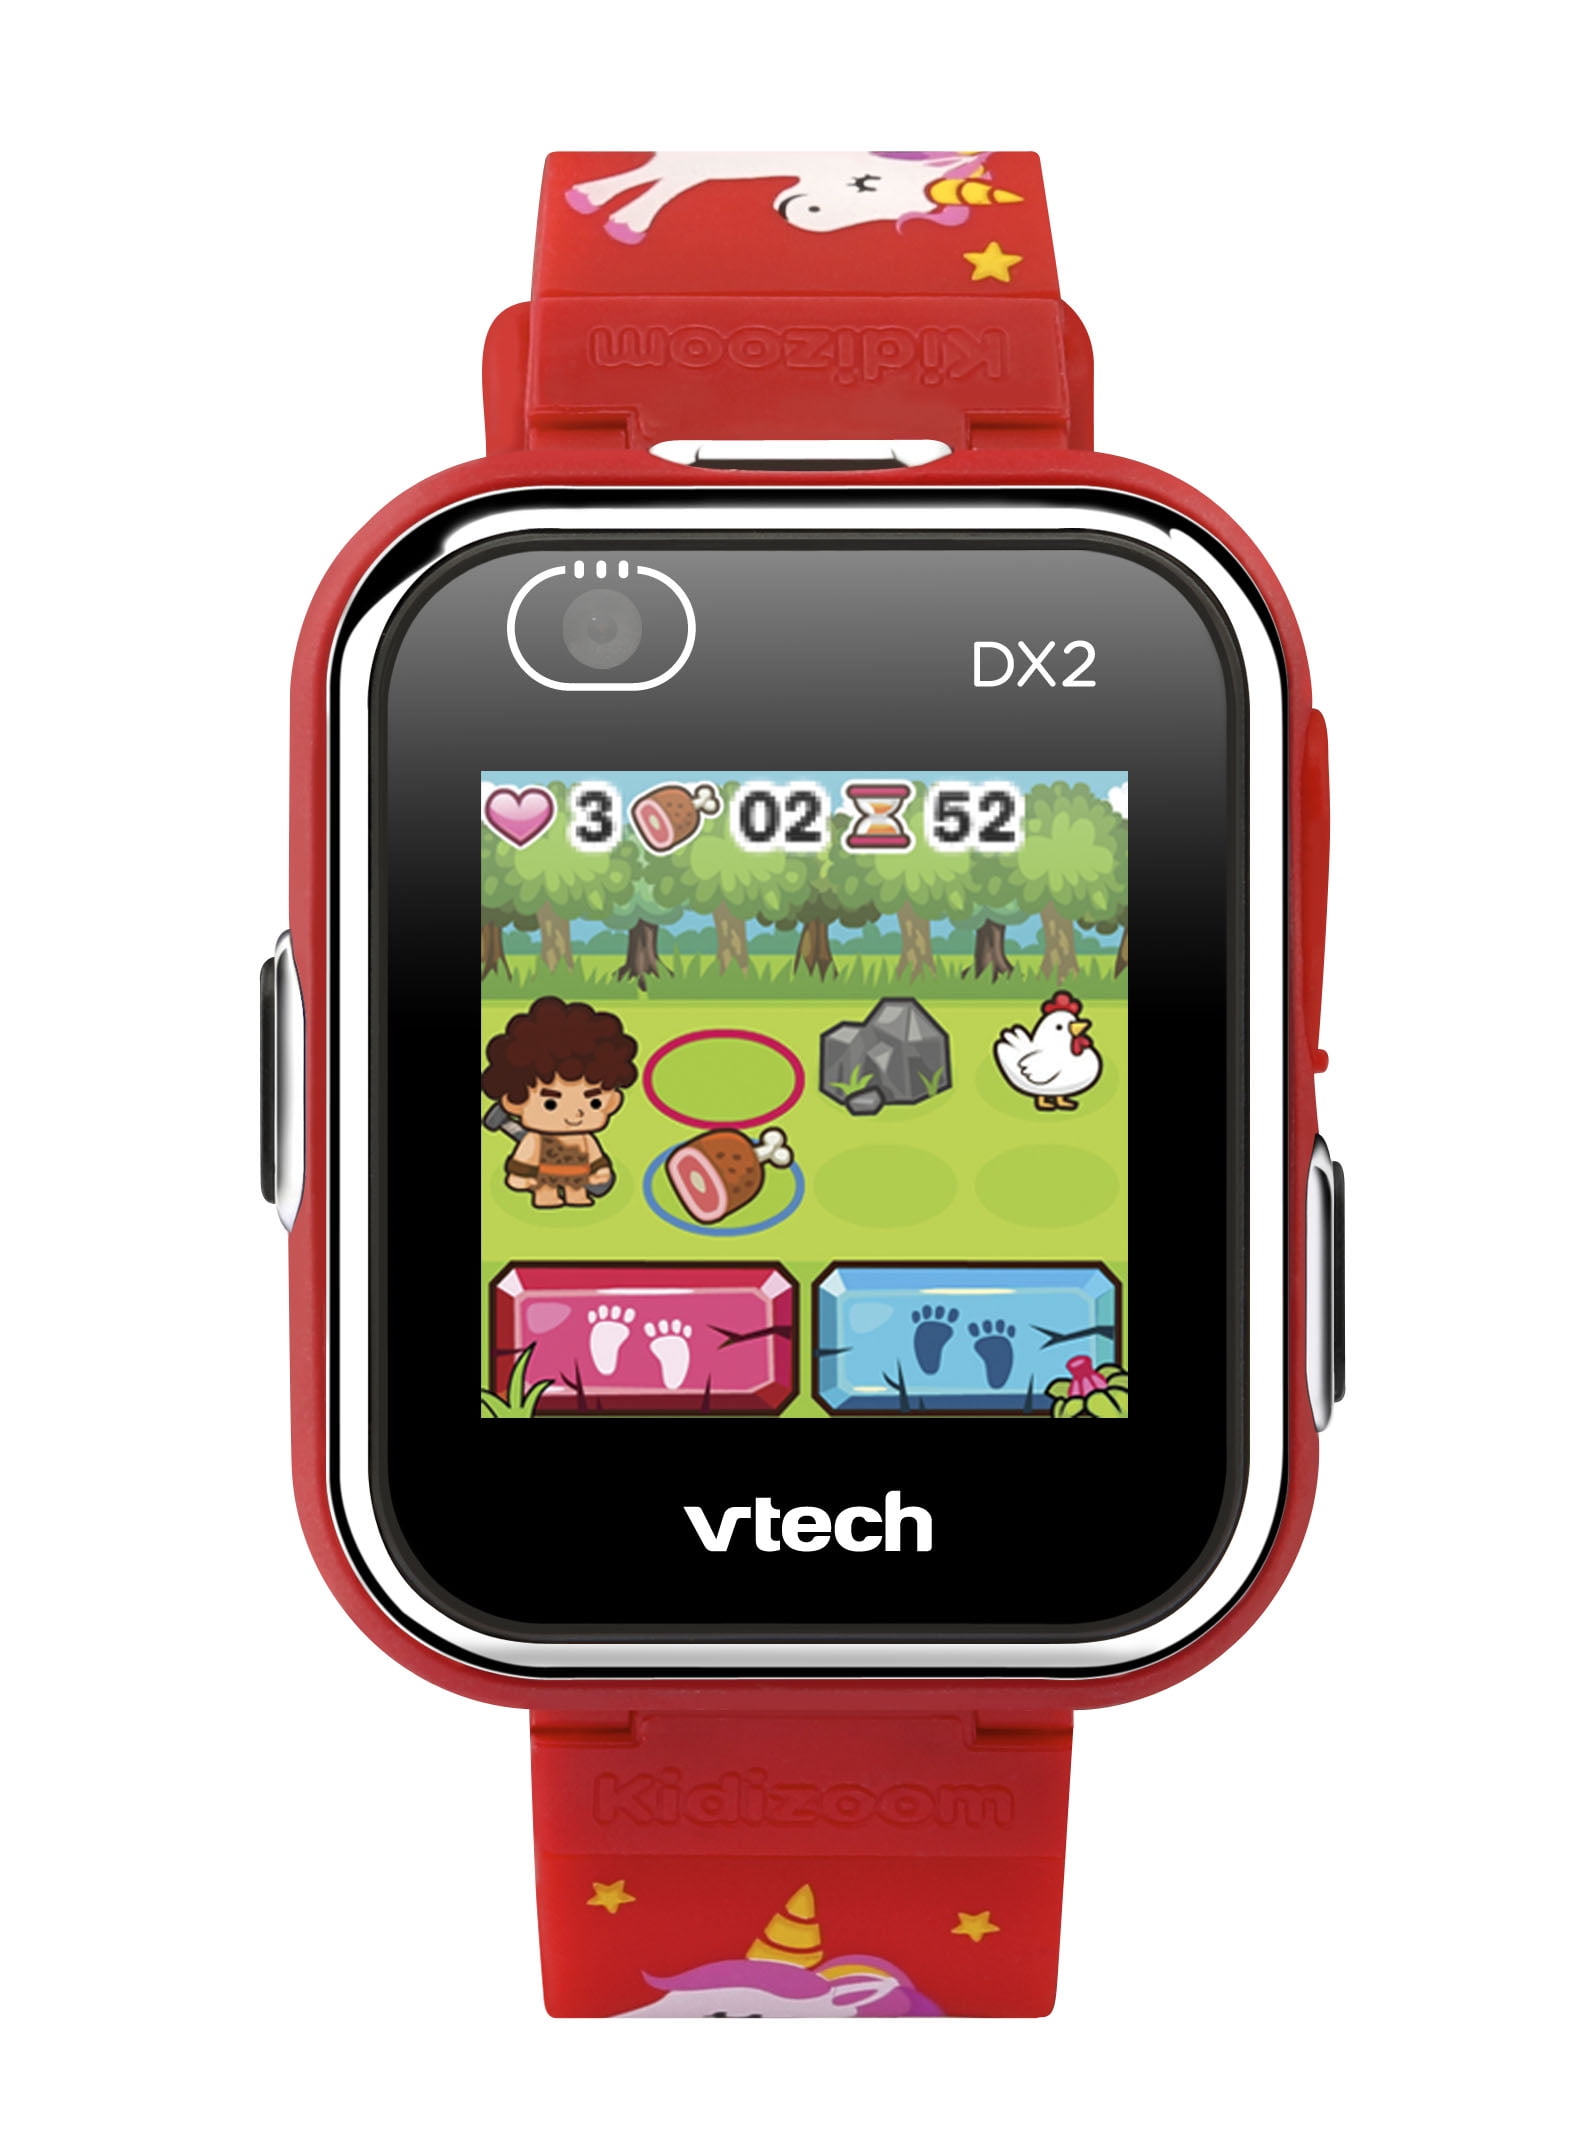 VTech Kidizoom Smartwatch DX2 Red Unicorn New Sealed Camera Game Kids Bracelet 